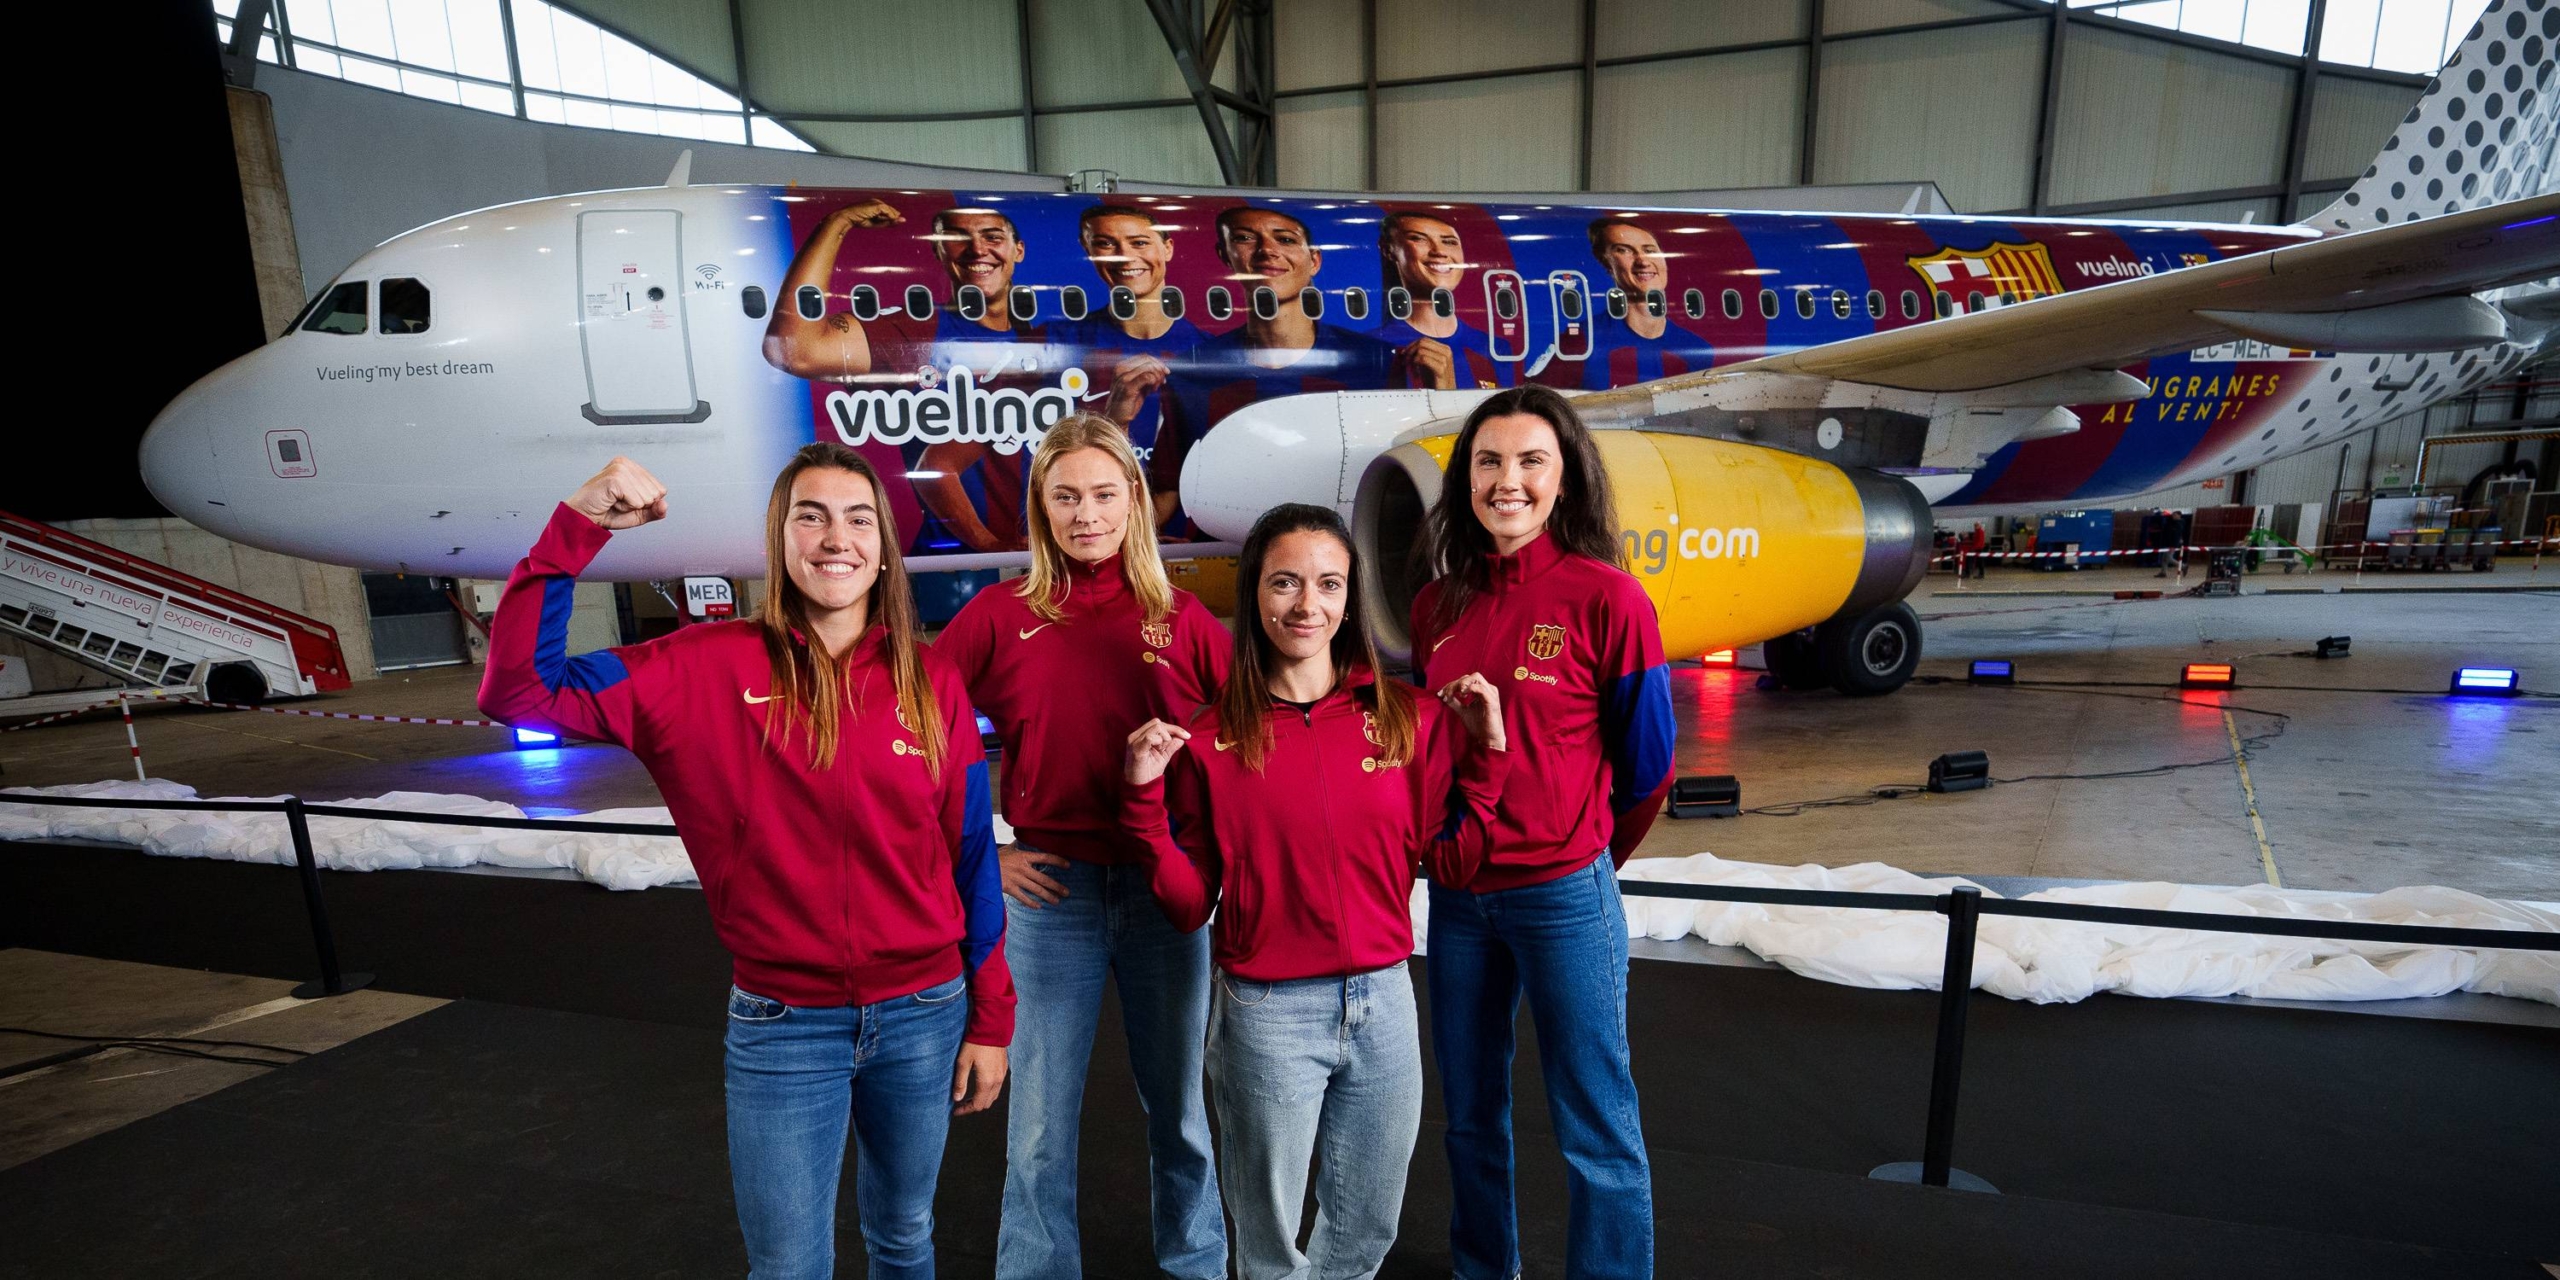 El Barça femení amb el seu avió personalitzat | Europa Press